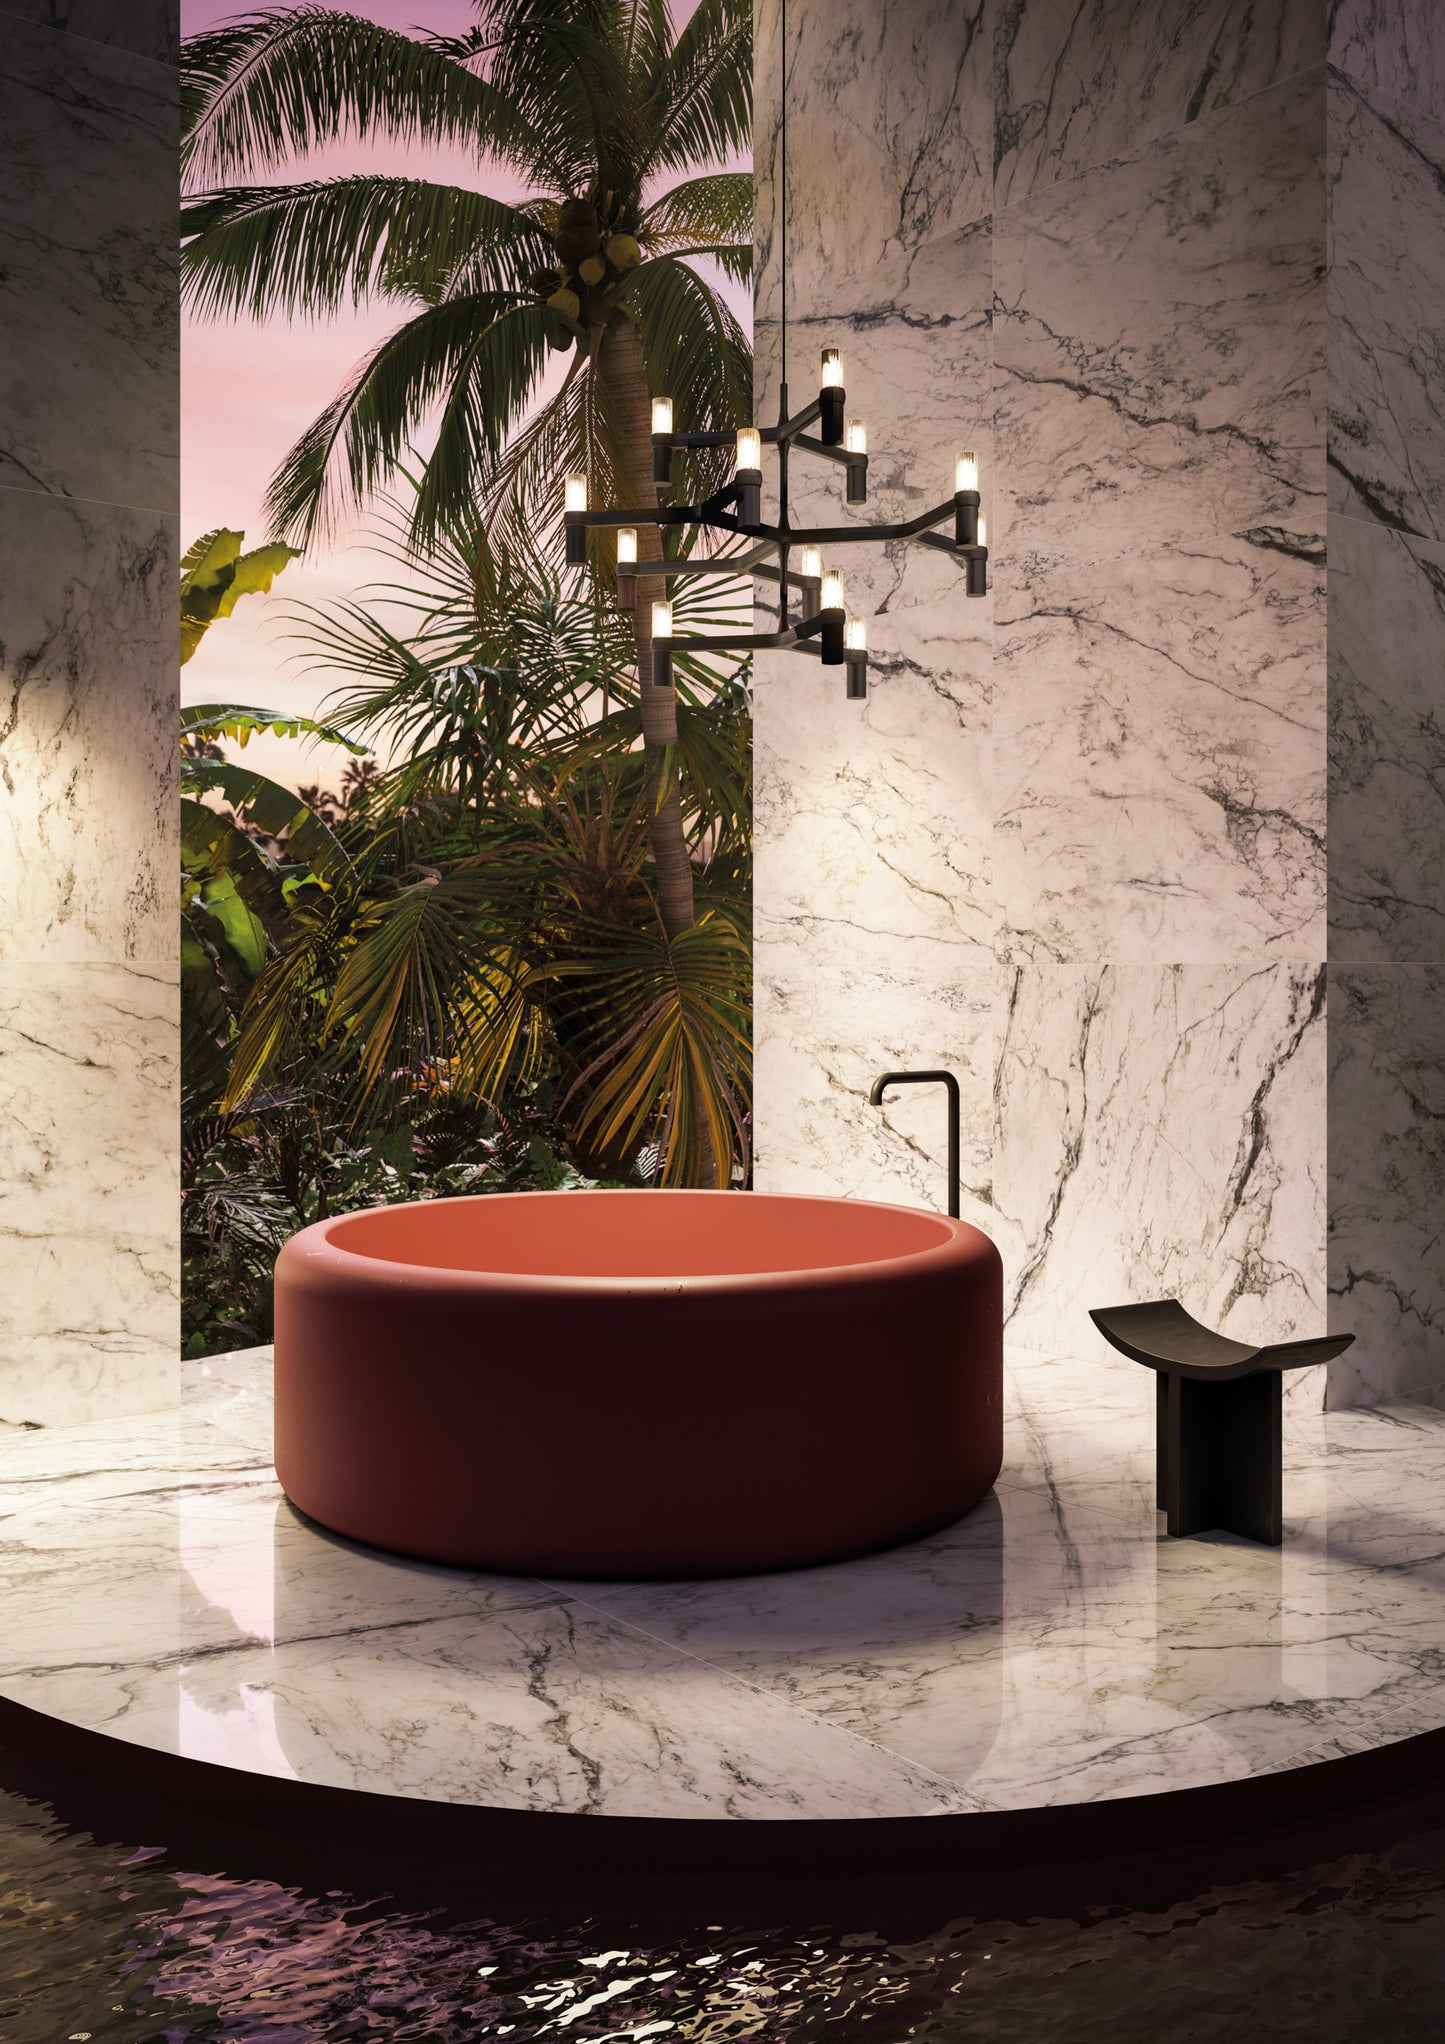 Tina circular de color rojo en un elegante baño de estilo moderno, con un suelo de marmolado Dream Pure Breccia Caprais de 120 x 120 cm, creando una experiencia lujosa y contemporánea en el diseño de interiores, con candelabro negro, vista tropical